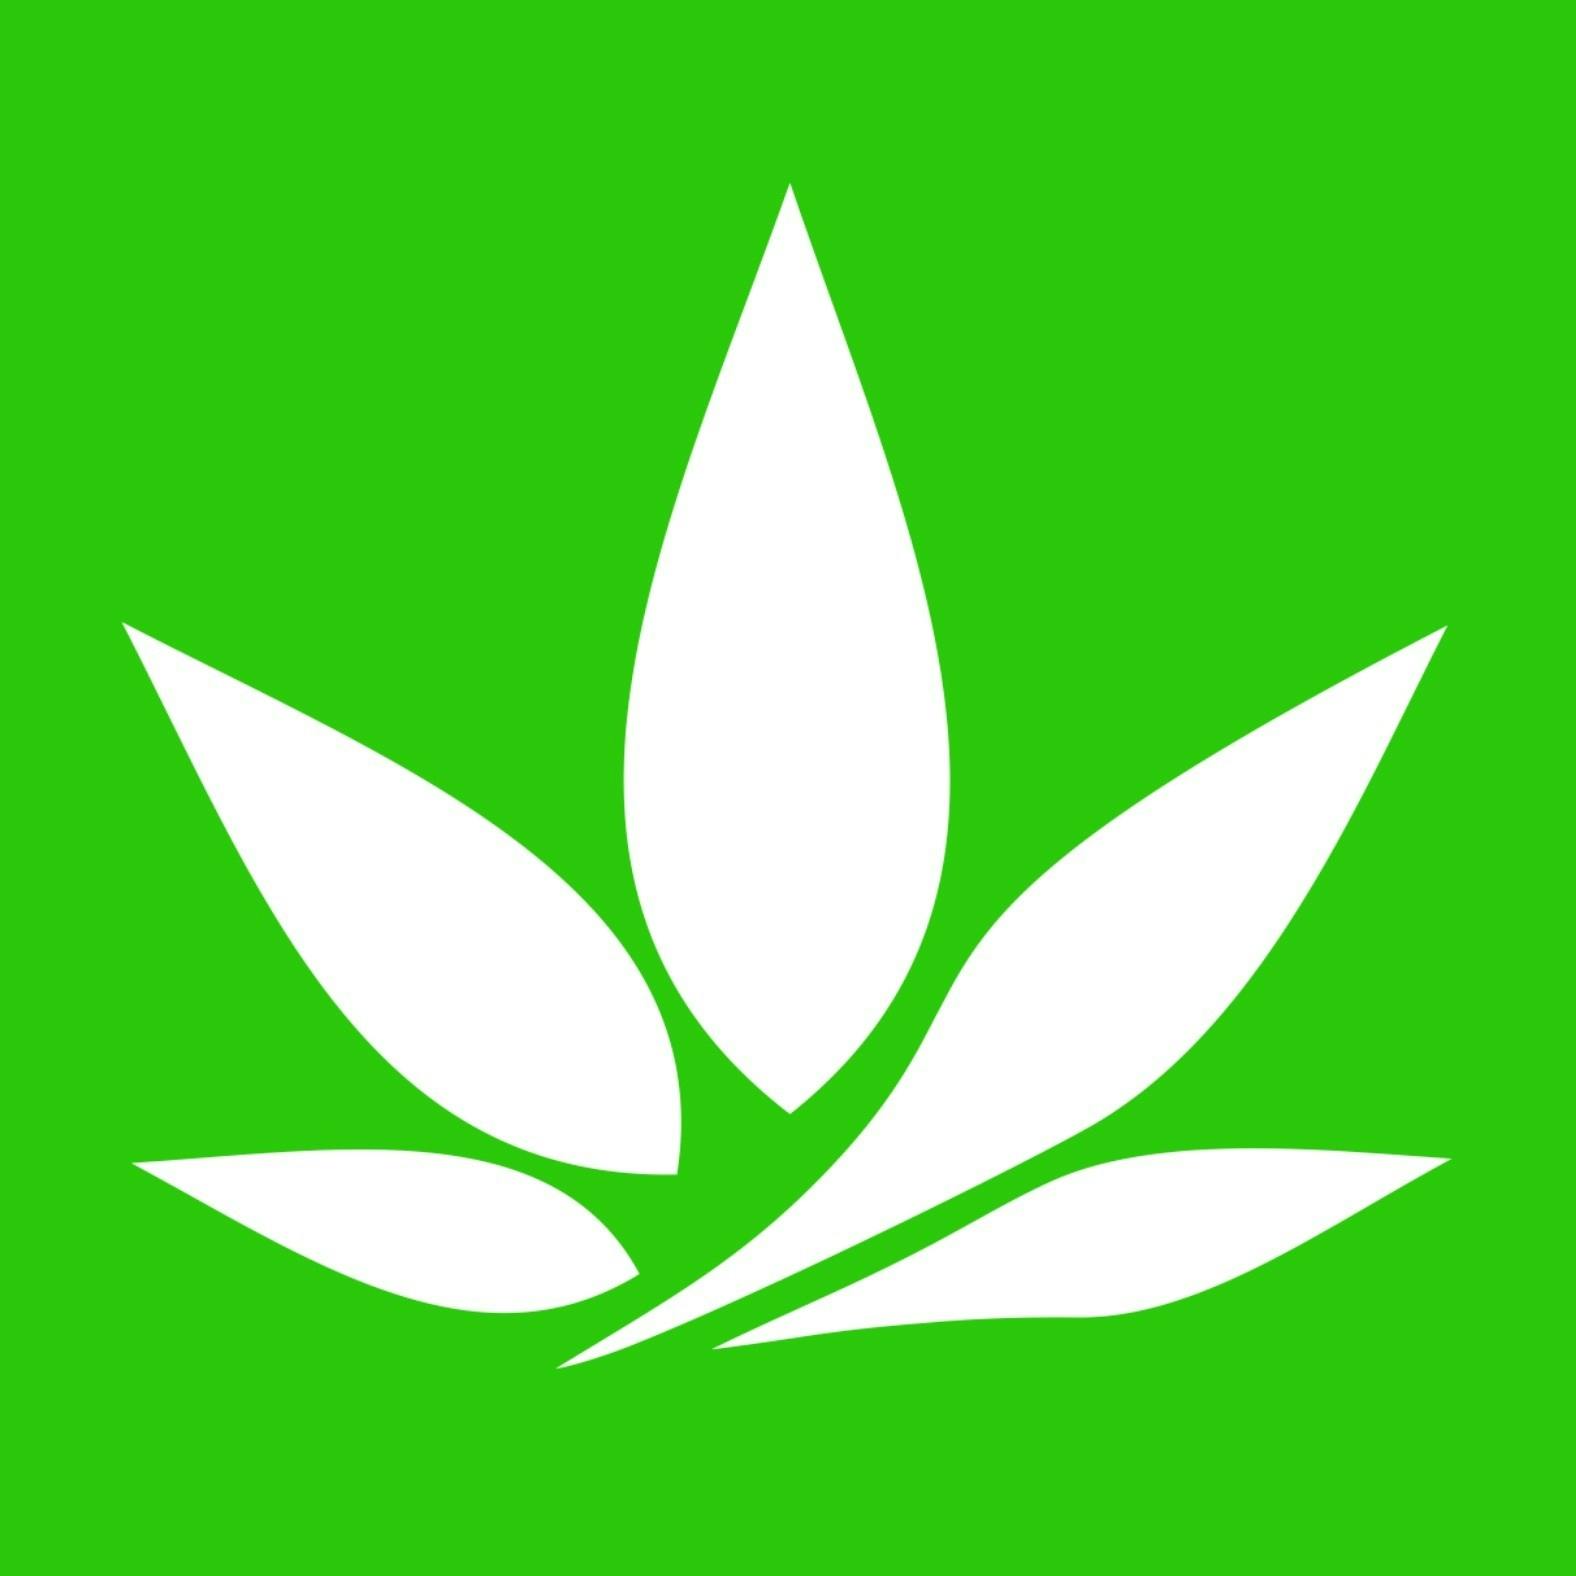 Peaceleaf logo